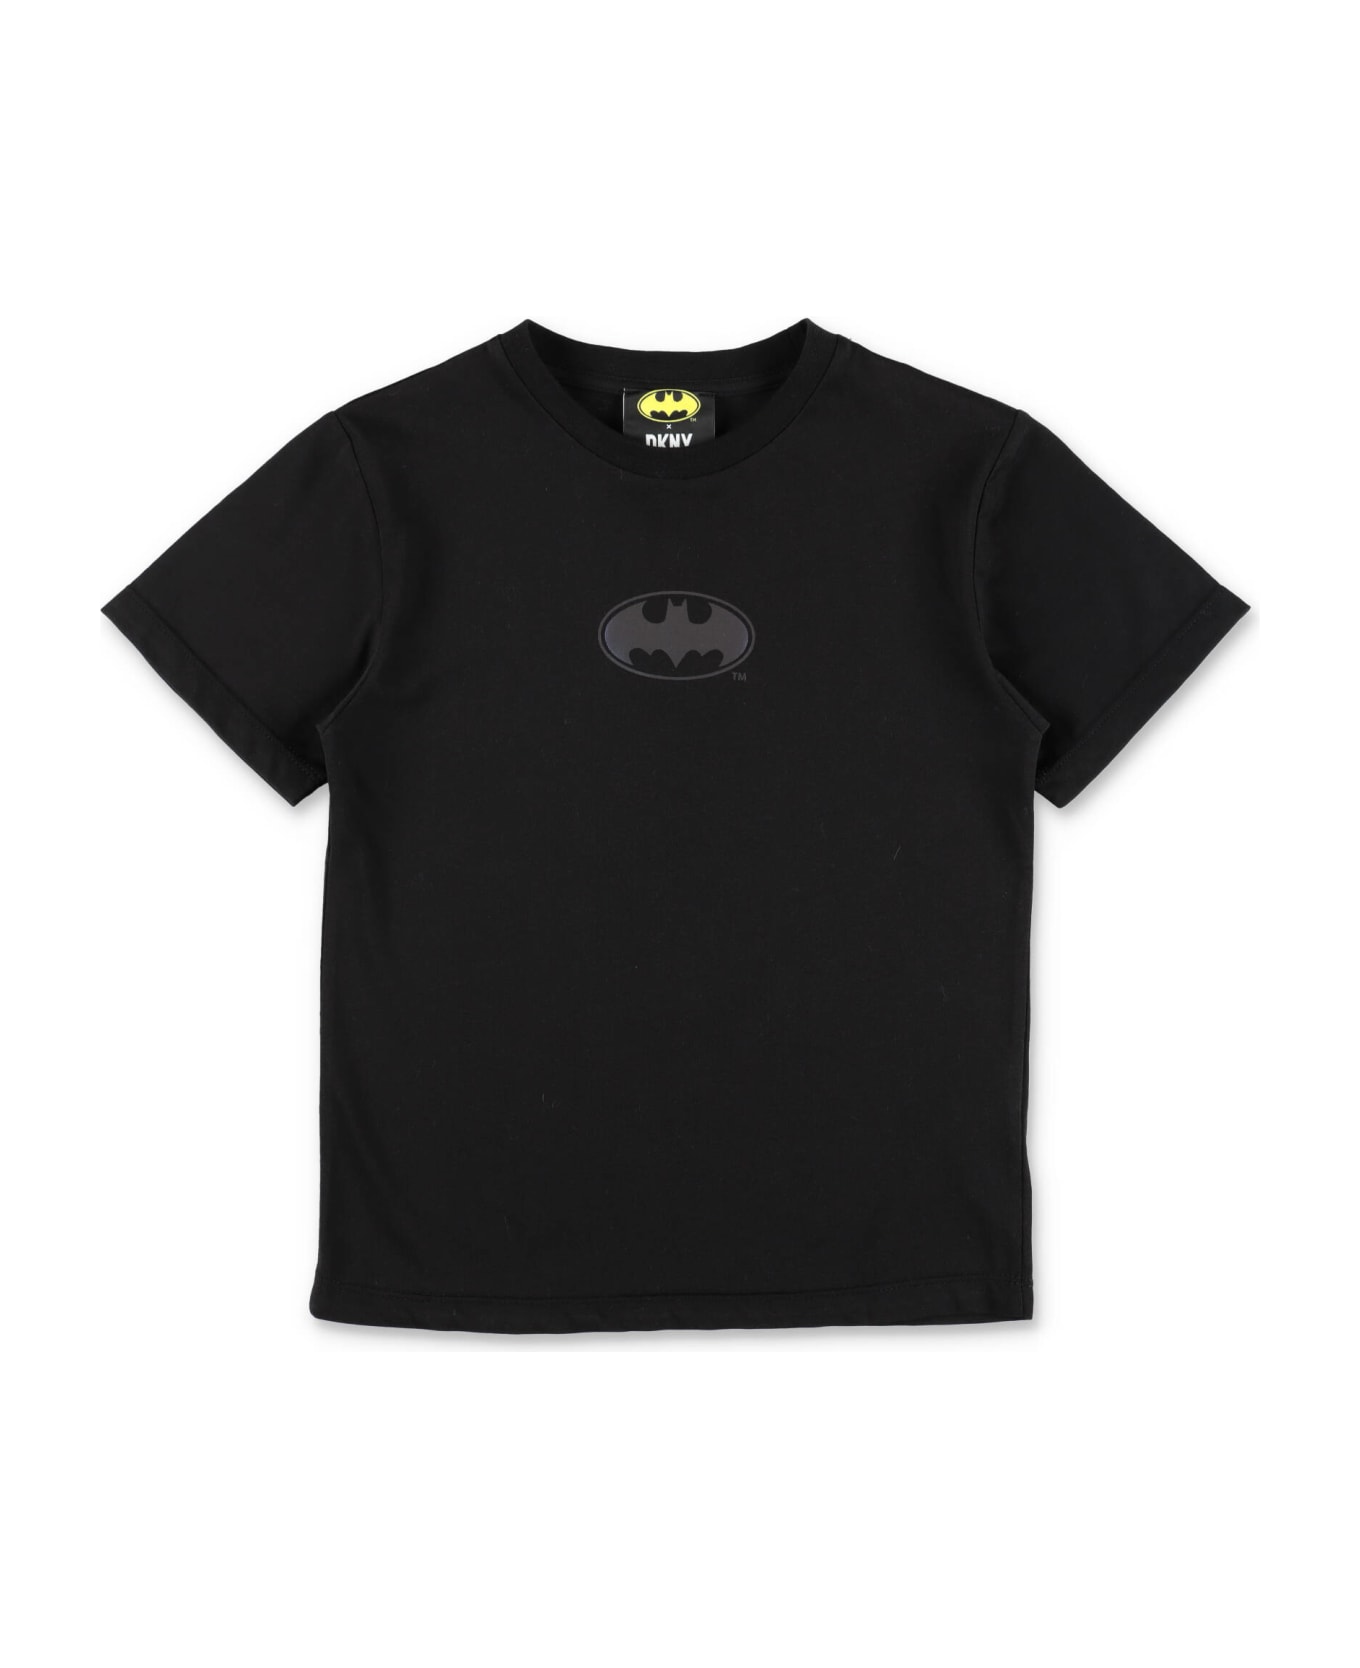 DKNY X Batman T-shirt Nera In Jersey Di Cotone Bambino - Nero